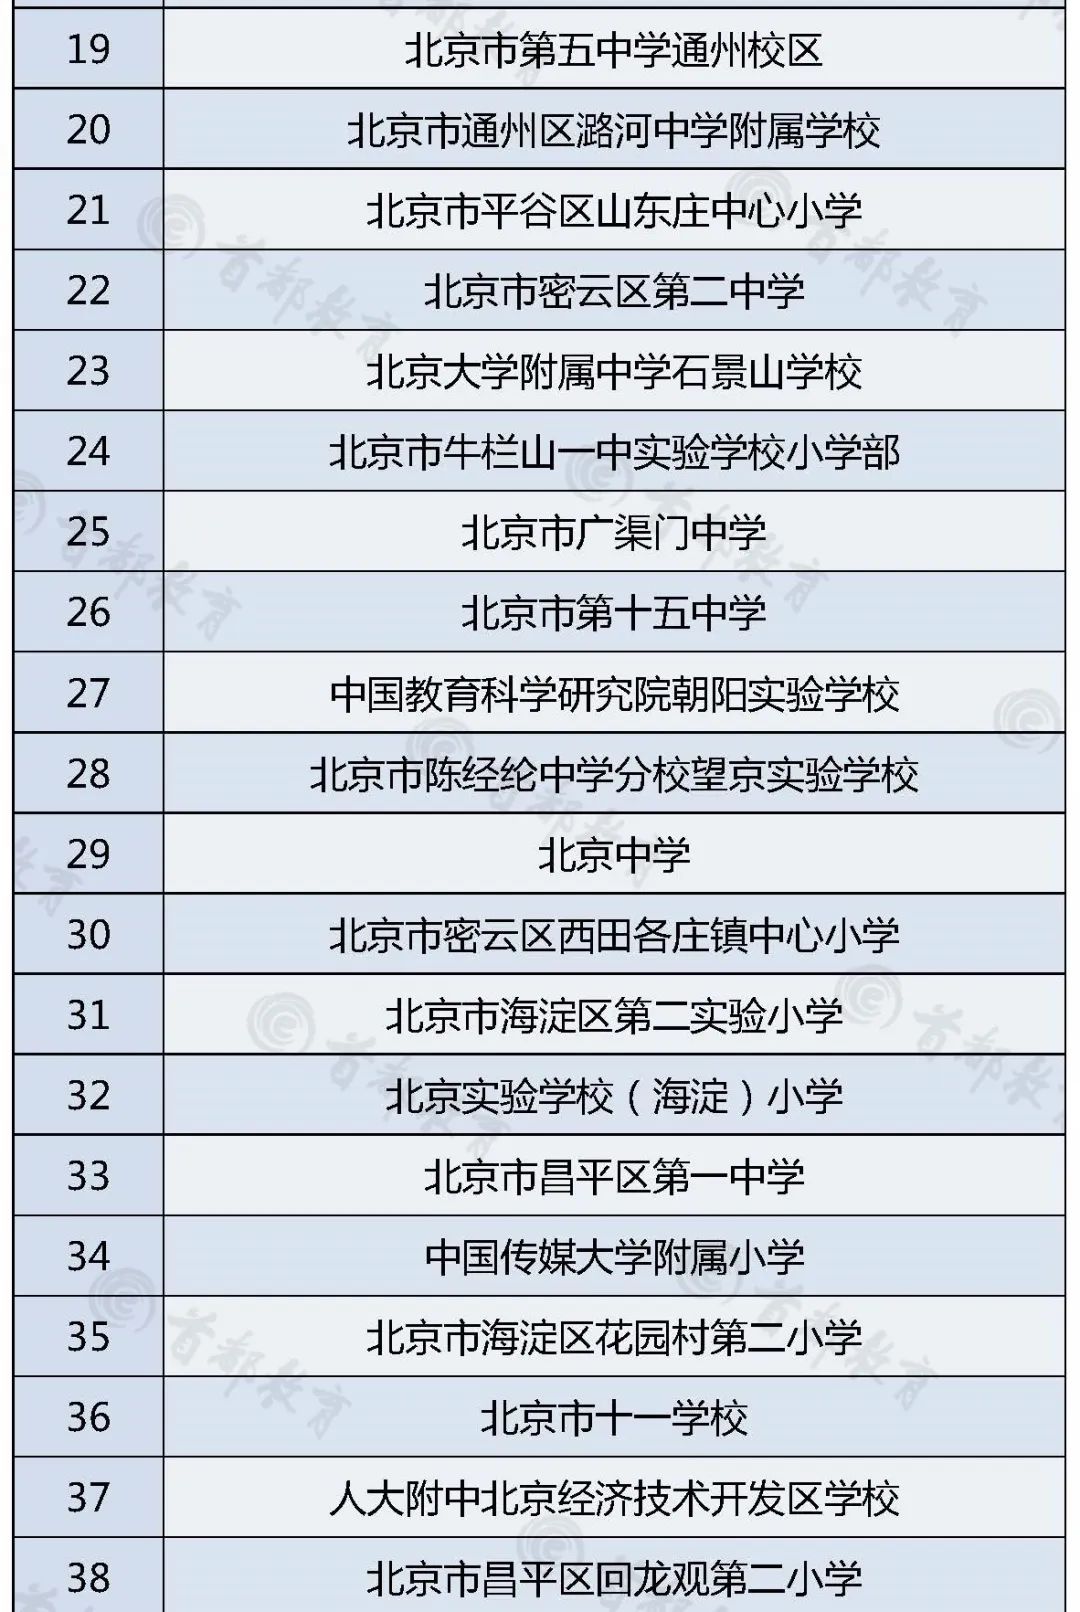 北京43所中小学校入选2020年度“全国青少年人工智能活动特色单位”